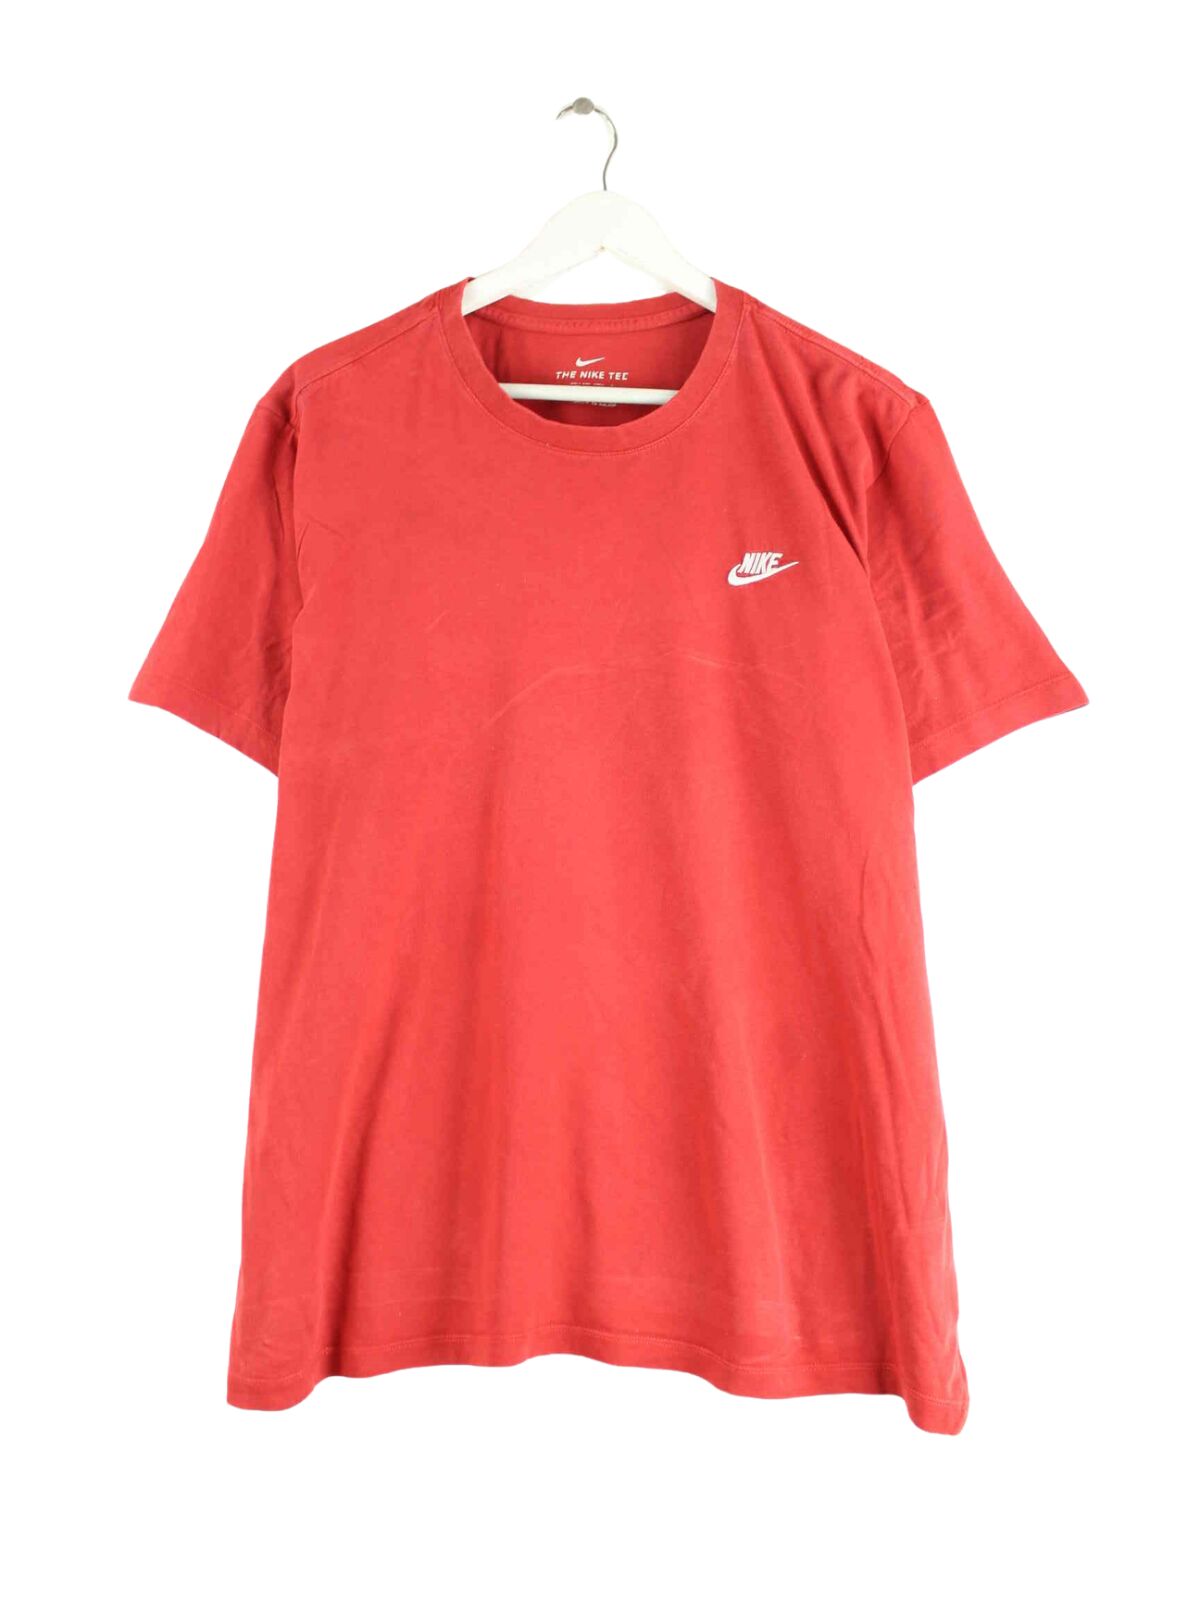 Nike Basic T-Shirt Rot XL (front image)